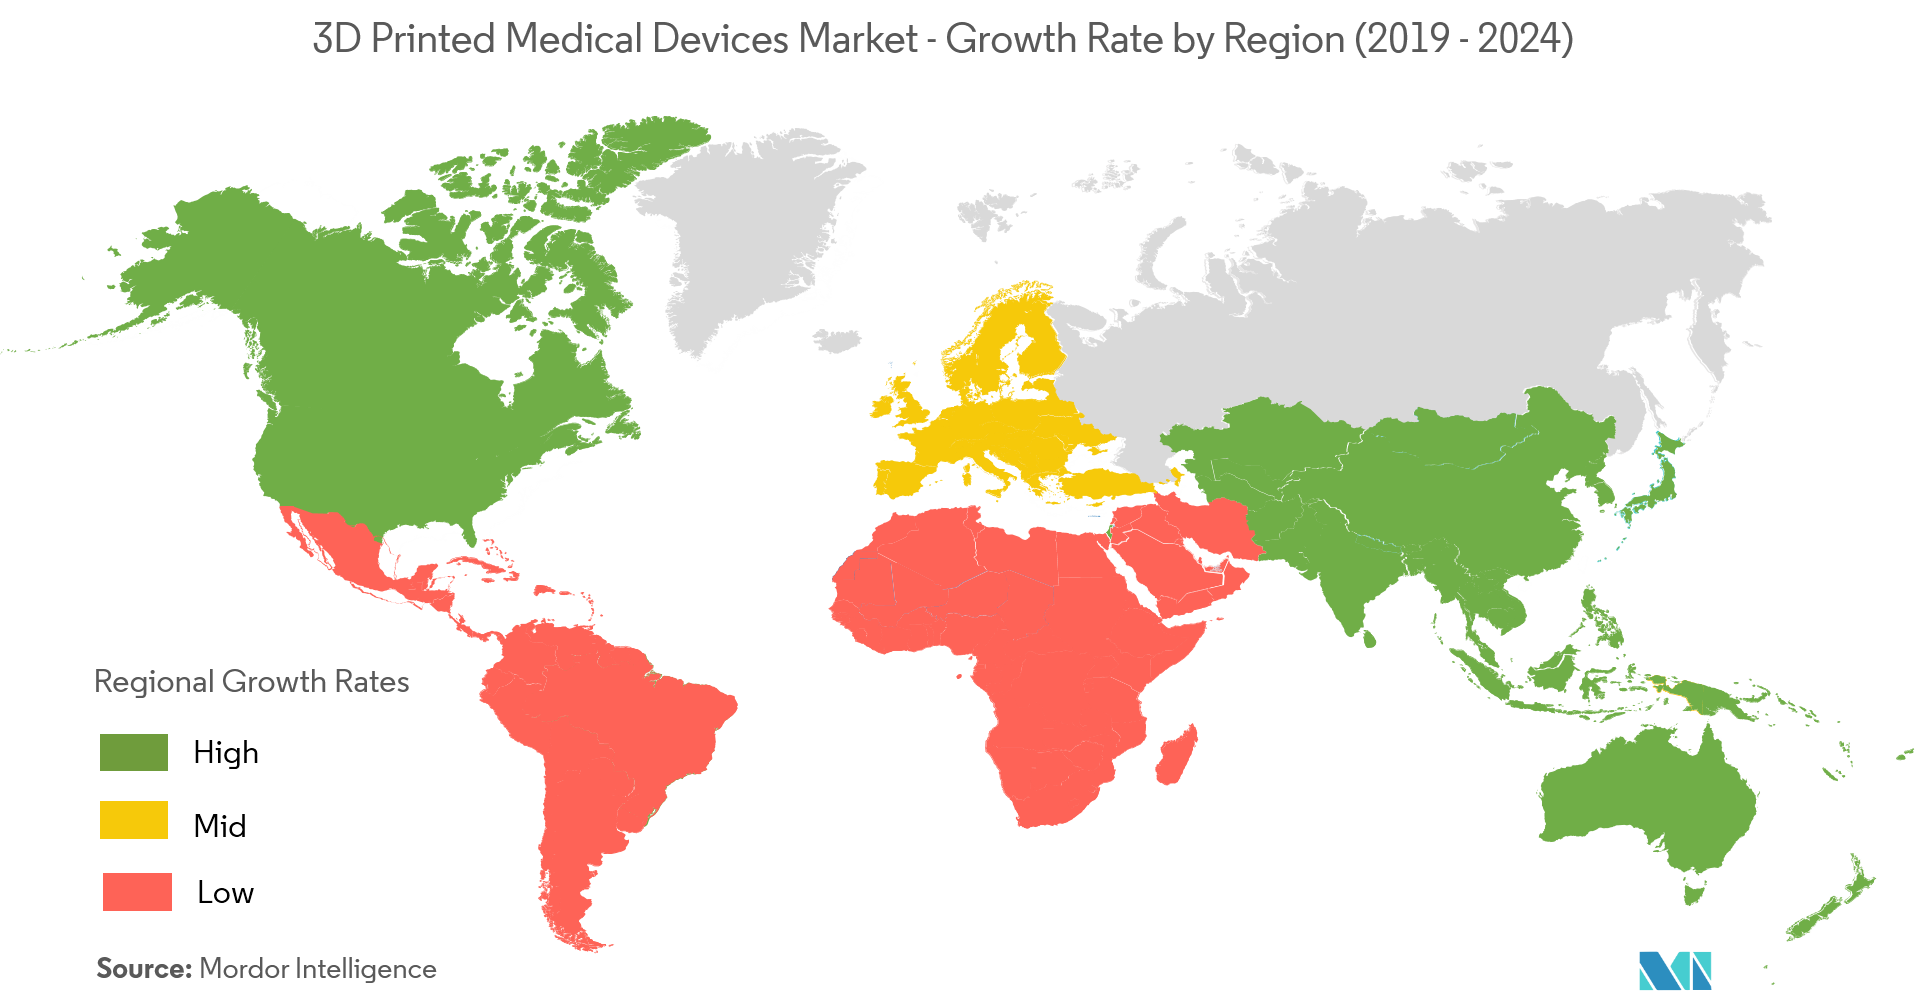 Thị trường thiết bị y tế in 3D - Tốc độ tăng trưởng theo khu vực (2019 - 2024)